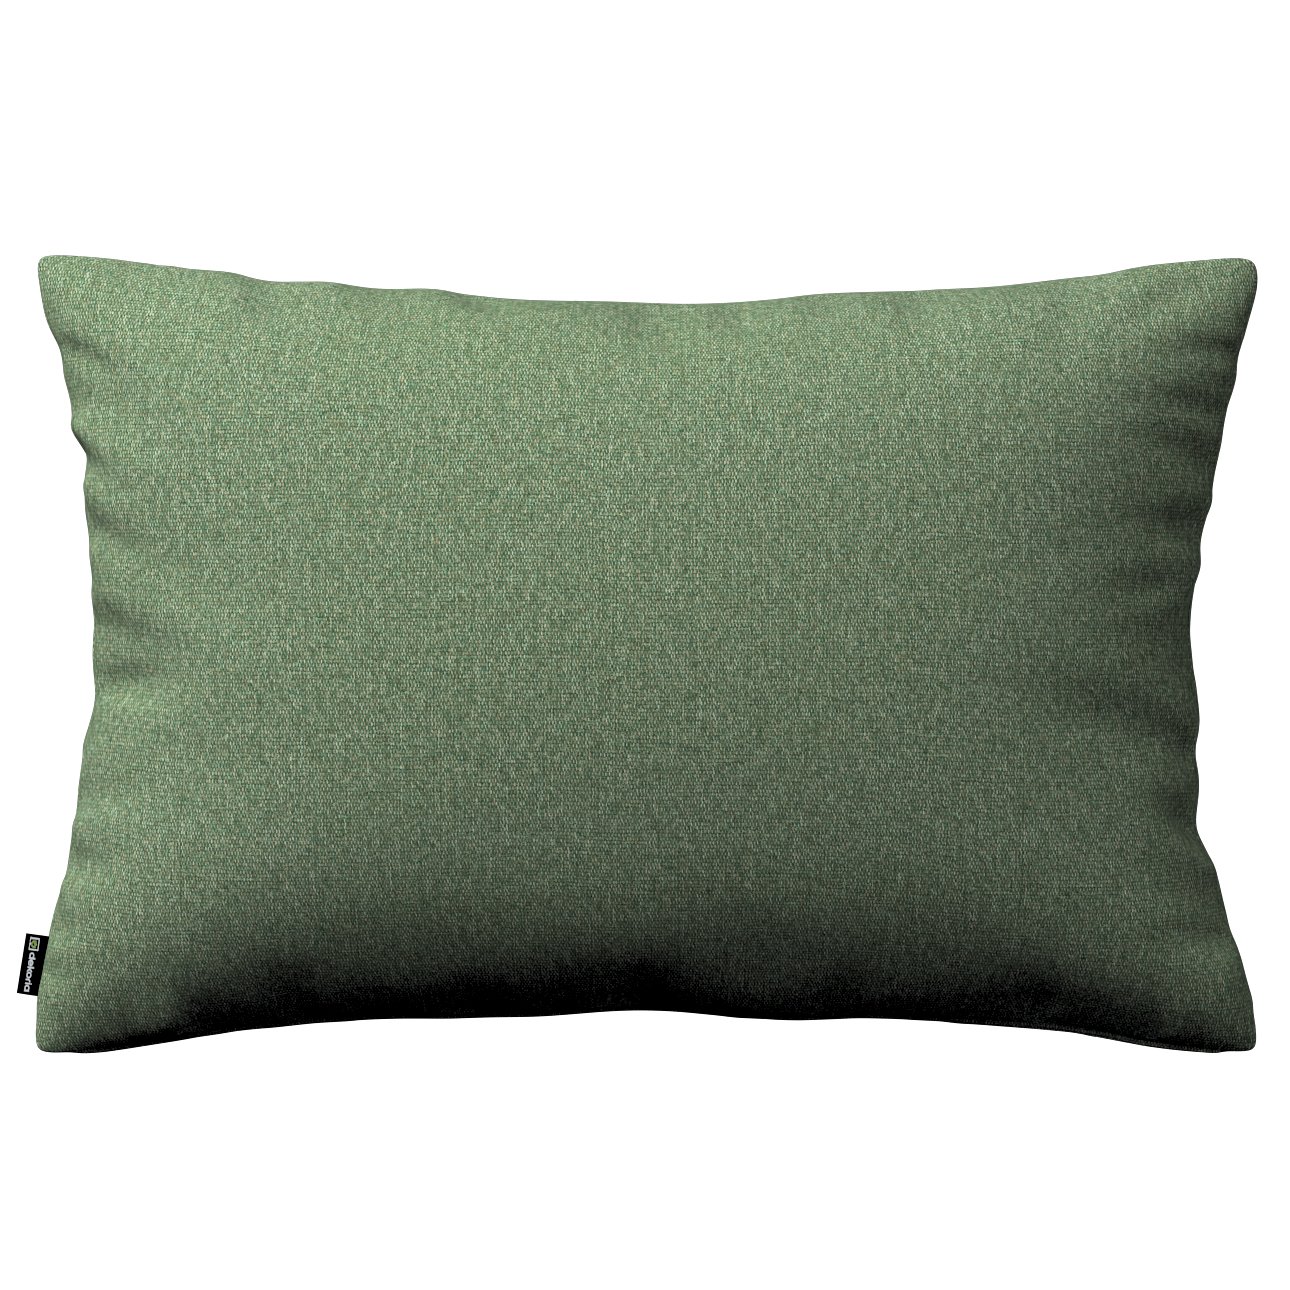 Dekoria Karin - jednoduchá obliečka, 60x40cm, zelená, 60 x 40 cm, Amsterdam, 704-44